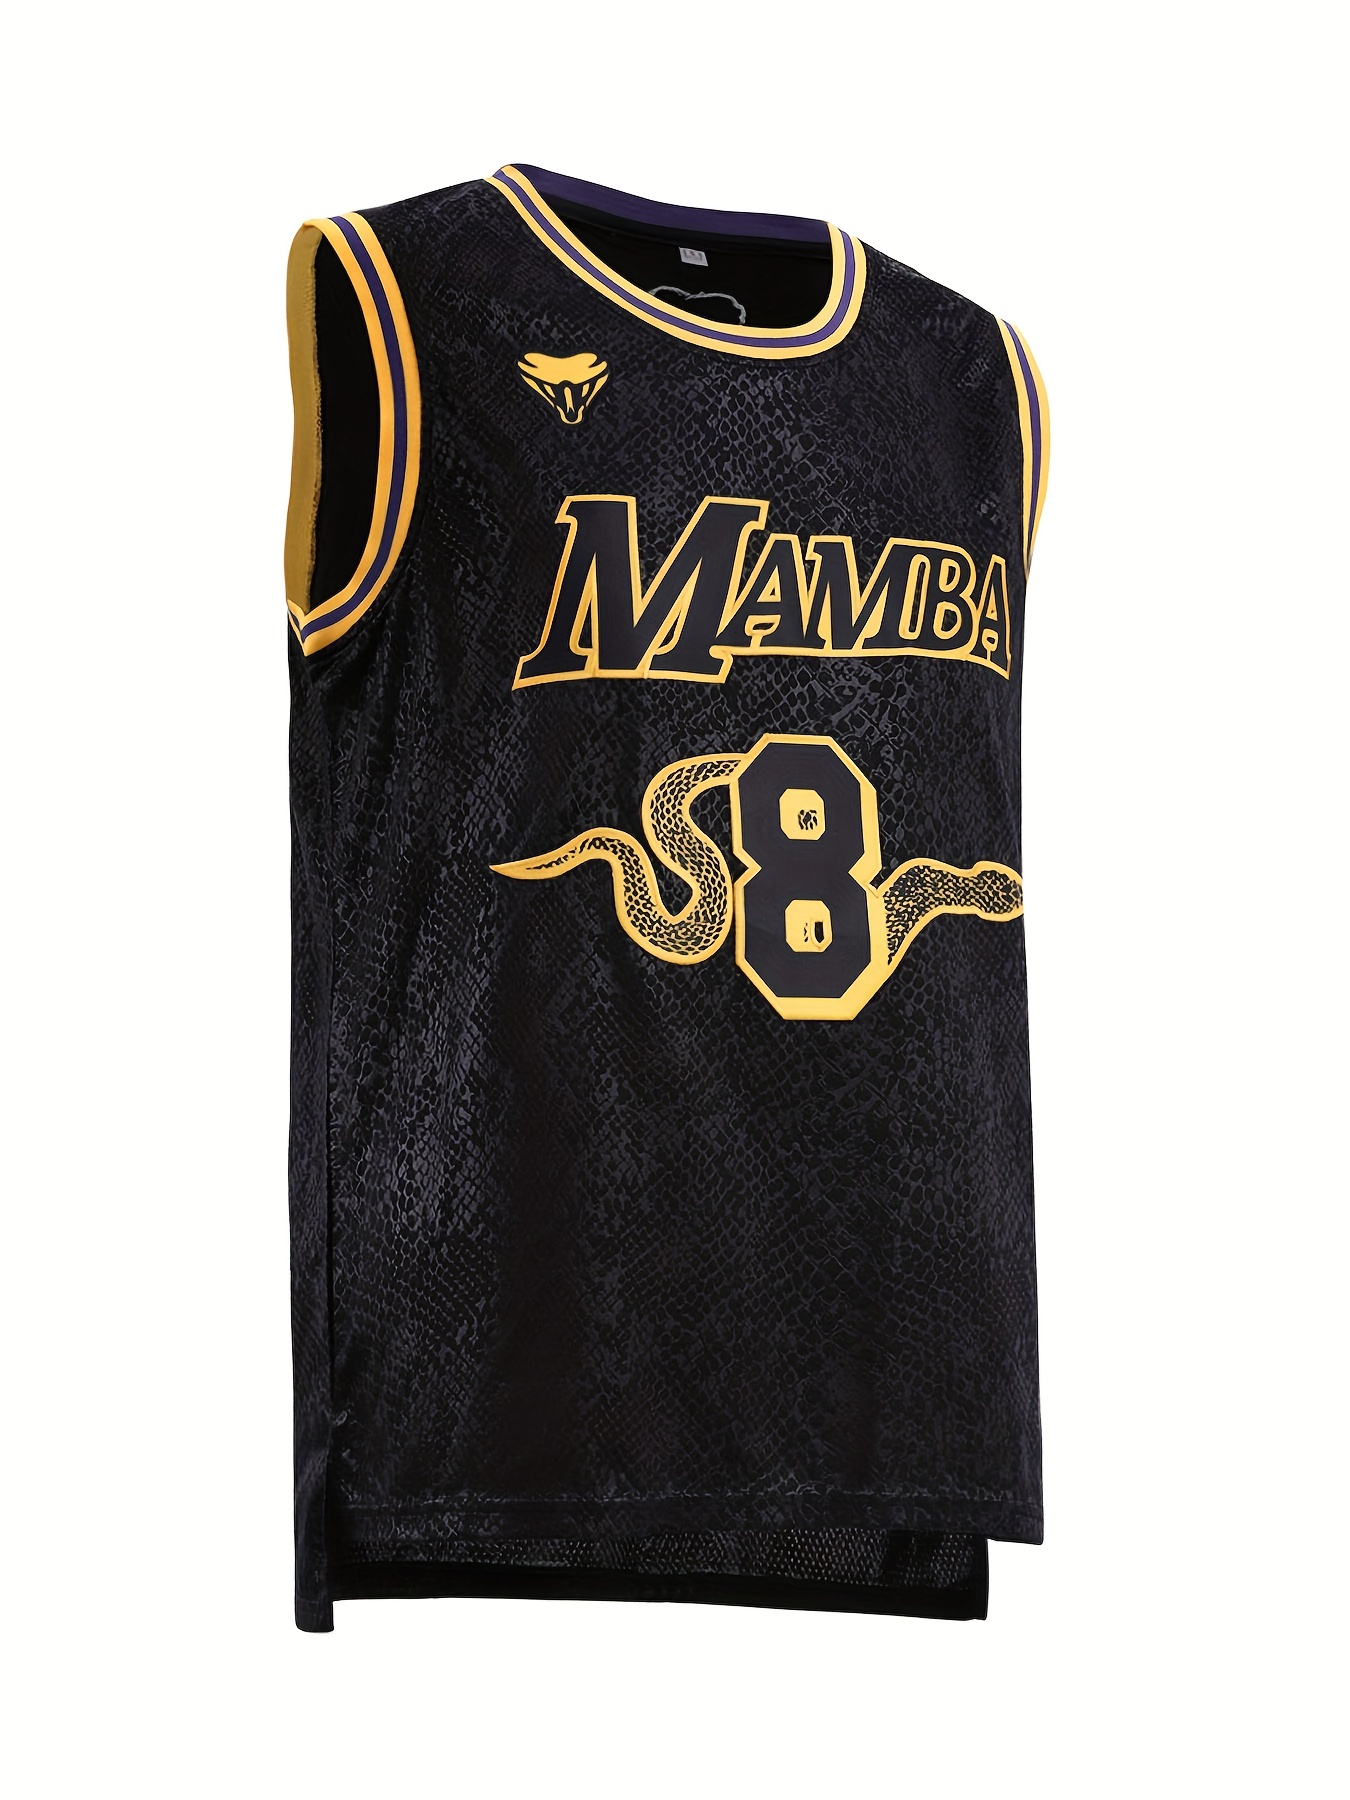 Black Mamba Basketball Jersey 8# Front 24# Back Bryant Usa Size